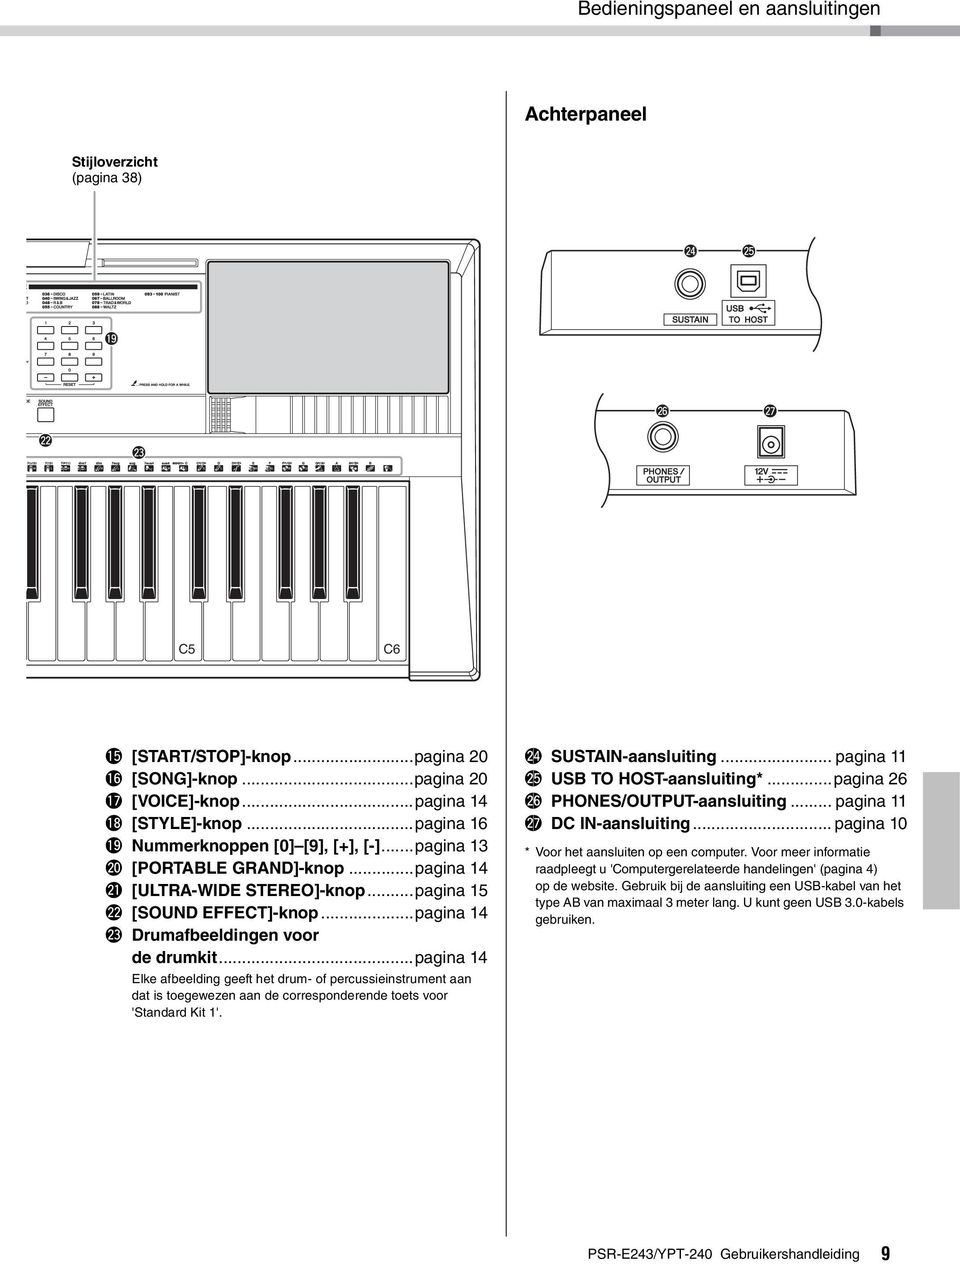 ..pagina 14 @3 Drumafbeeldingen voor de drumkit...pagina 14 Elke afbeelding geeft het drum- of percussieinstrument aan dat is toegewezen aan de corresponderende toets voor 'Standard Kit 1'.